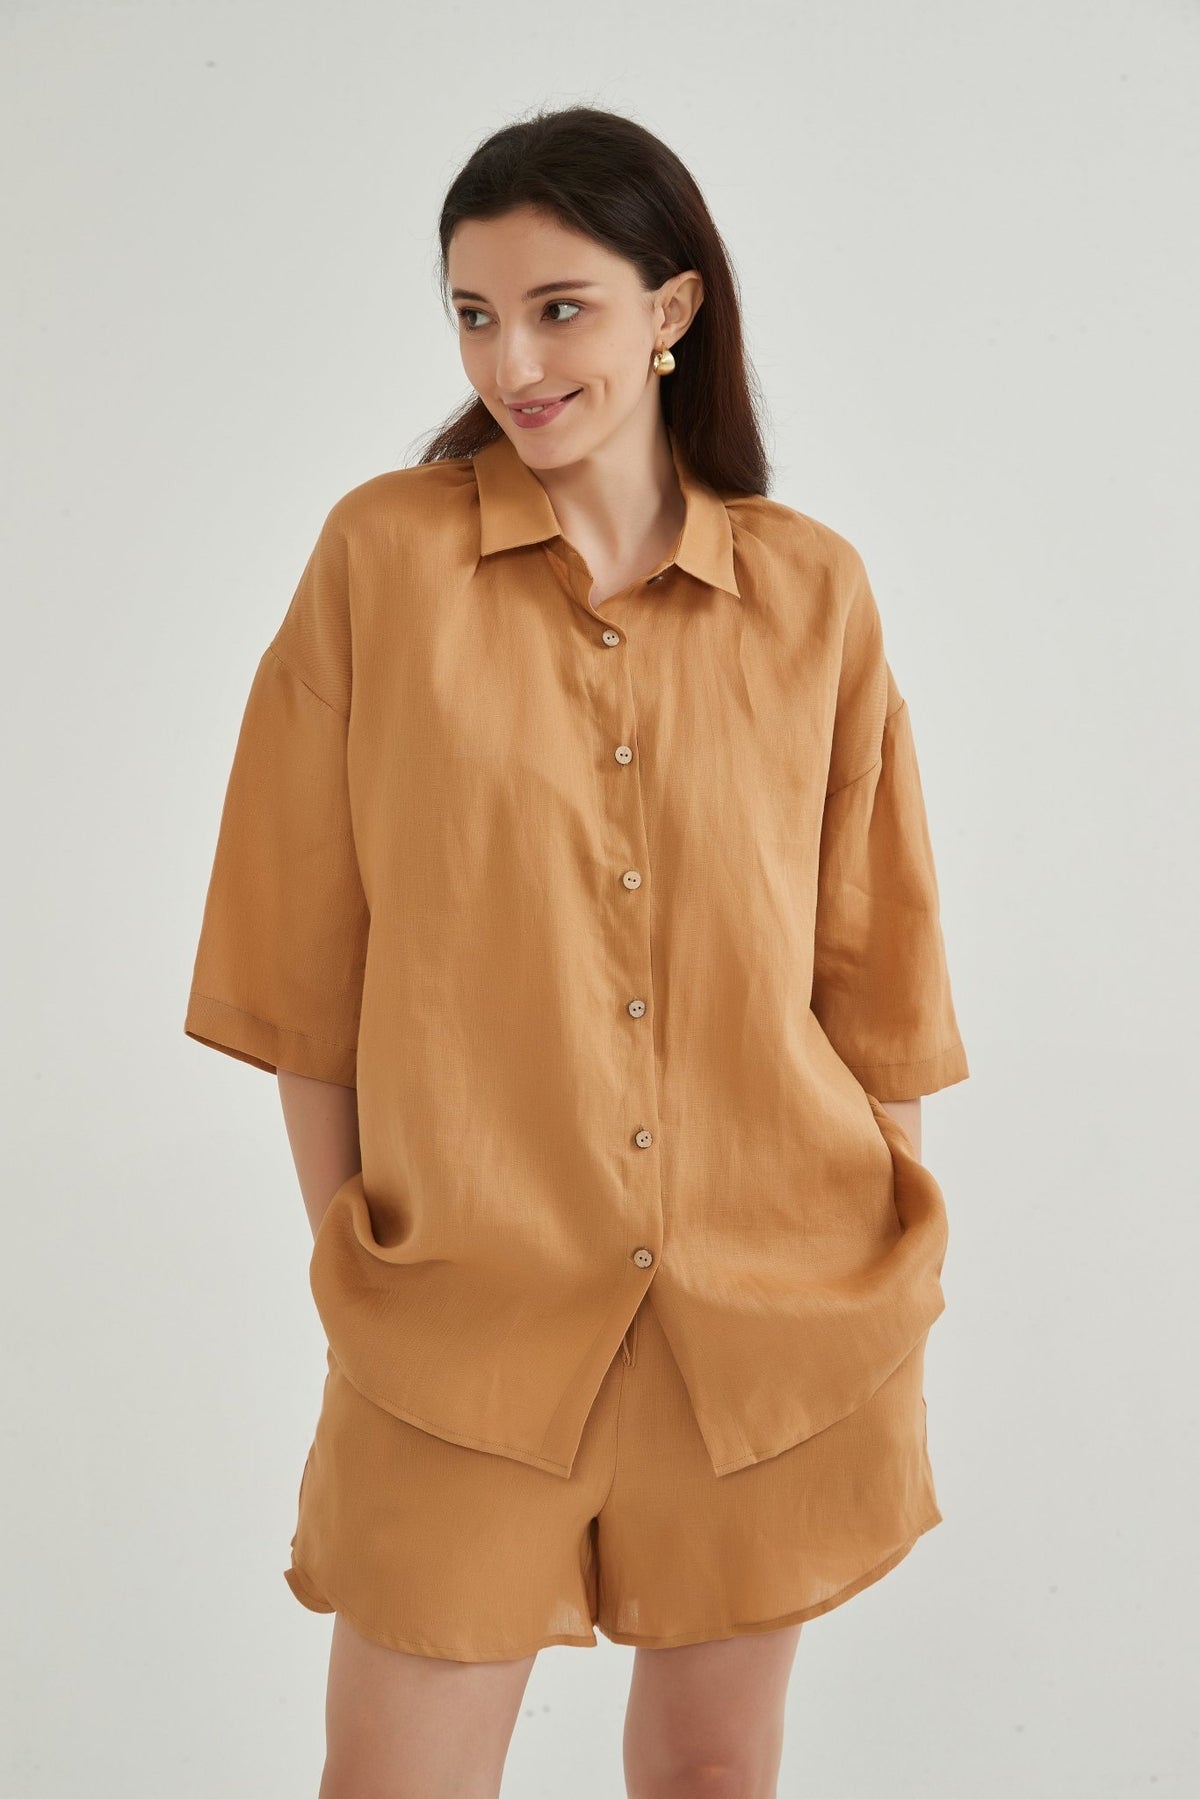 Tessa 100% Linen Oversize Shirt and Shorts Set - Whisper Mint